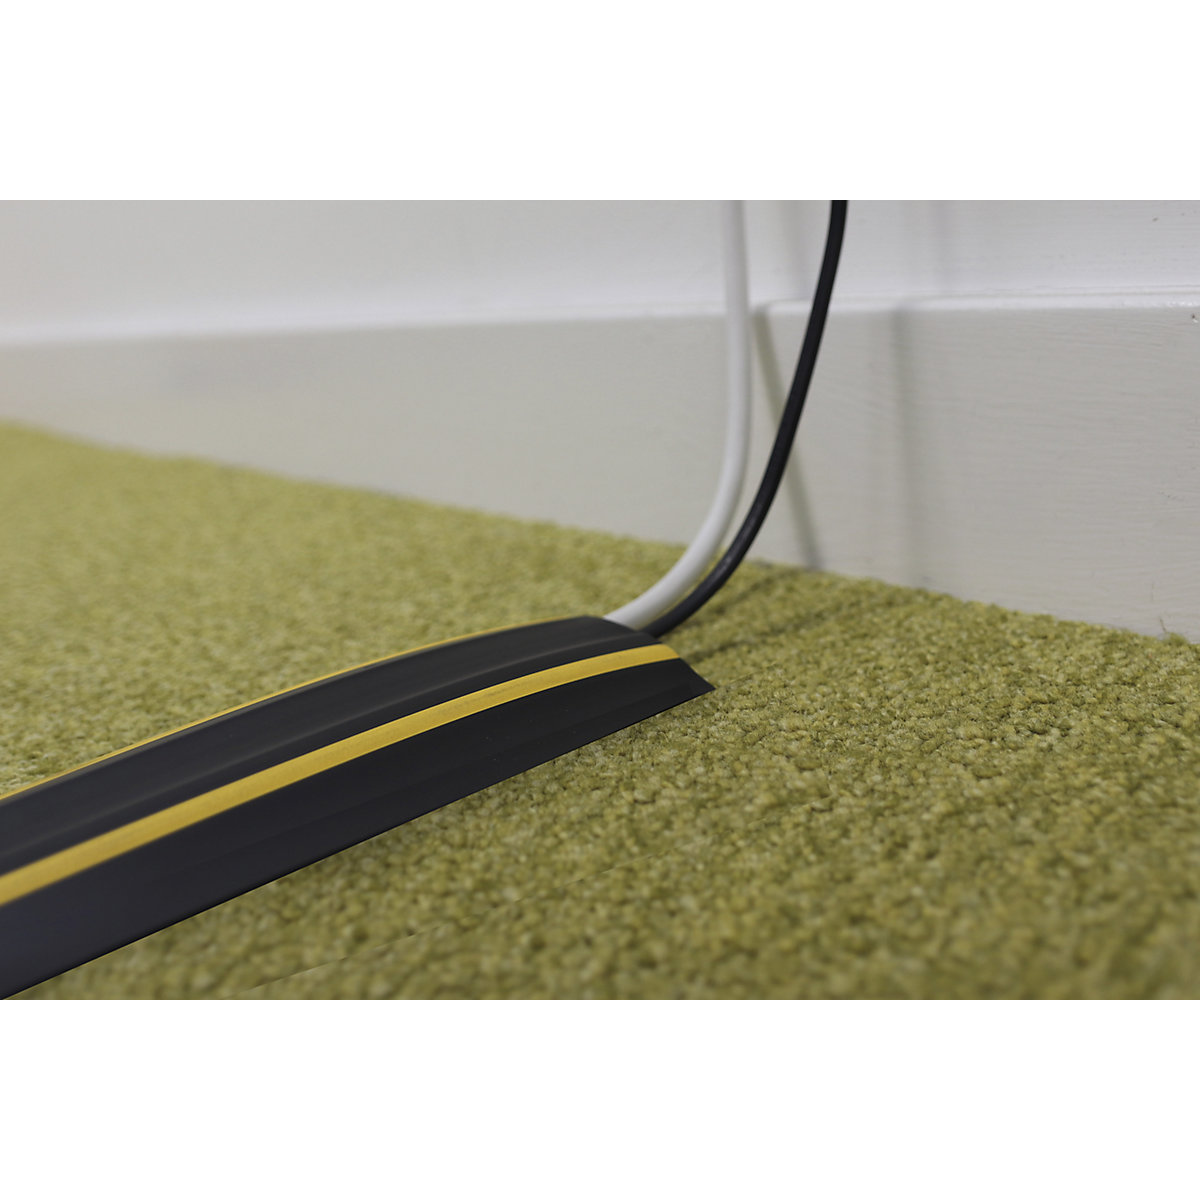 Canaleta pasacables de suelo. Cómo proteger cables en el piso